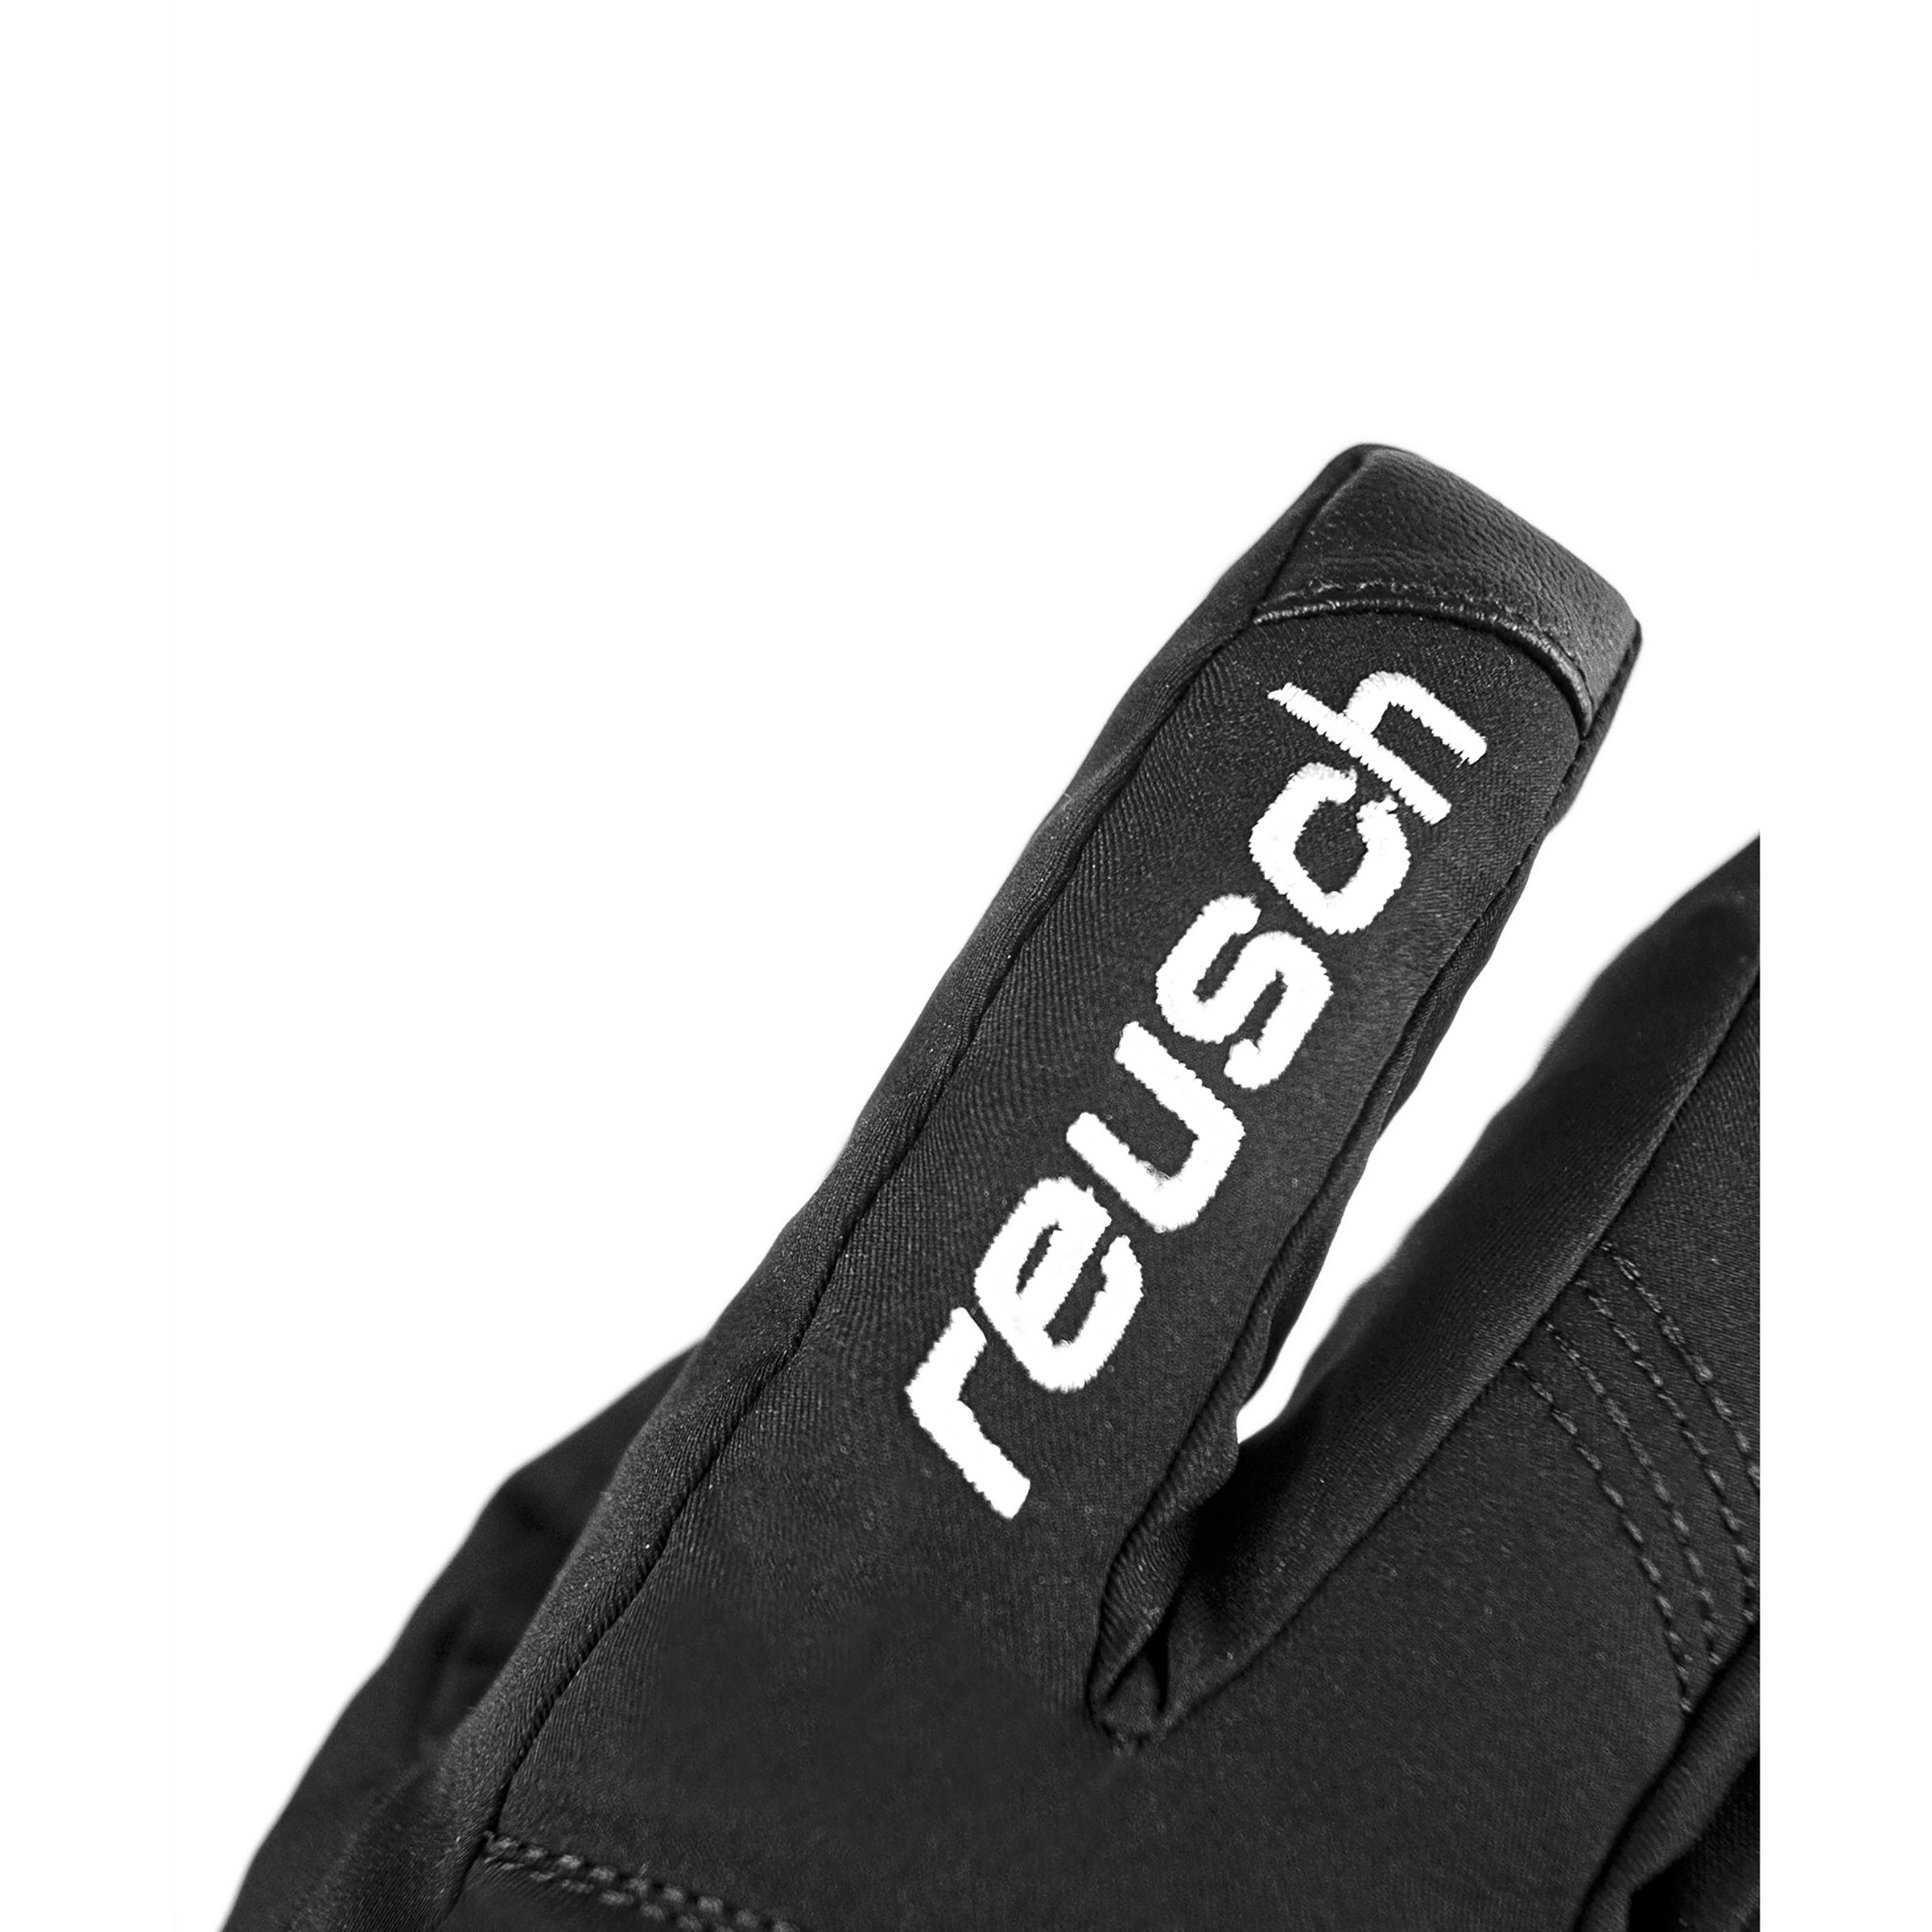 Reusch Blaster GTX Produkt Handschuhe | | Bergzeit Archiviertes